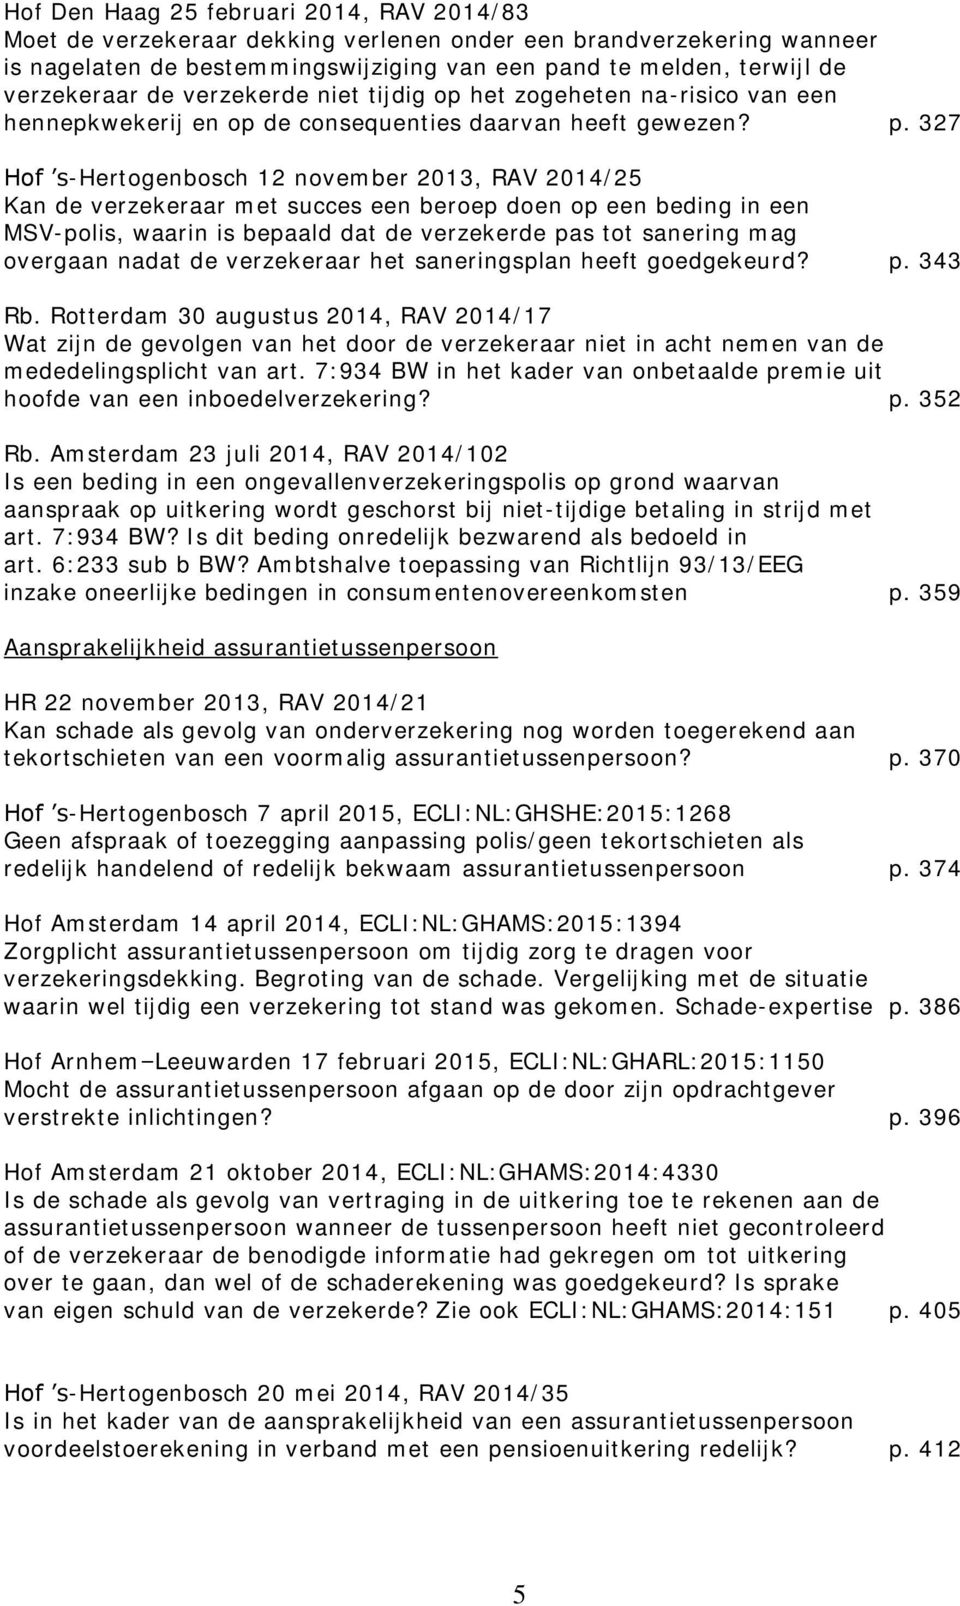 327 Hof s-hertogenbosch 12 november 2013, RAV 2014/25 Kan de verzekeraar met succes een beroep doen op een beding in een MSV-polis, waarin is bepaald dat de verzekerde pas tot sanering mag overgaan